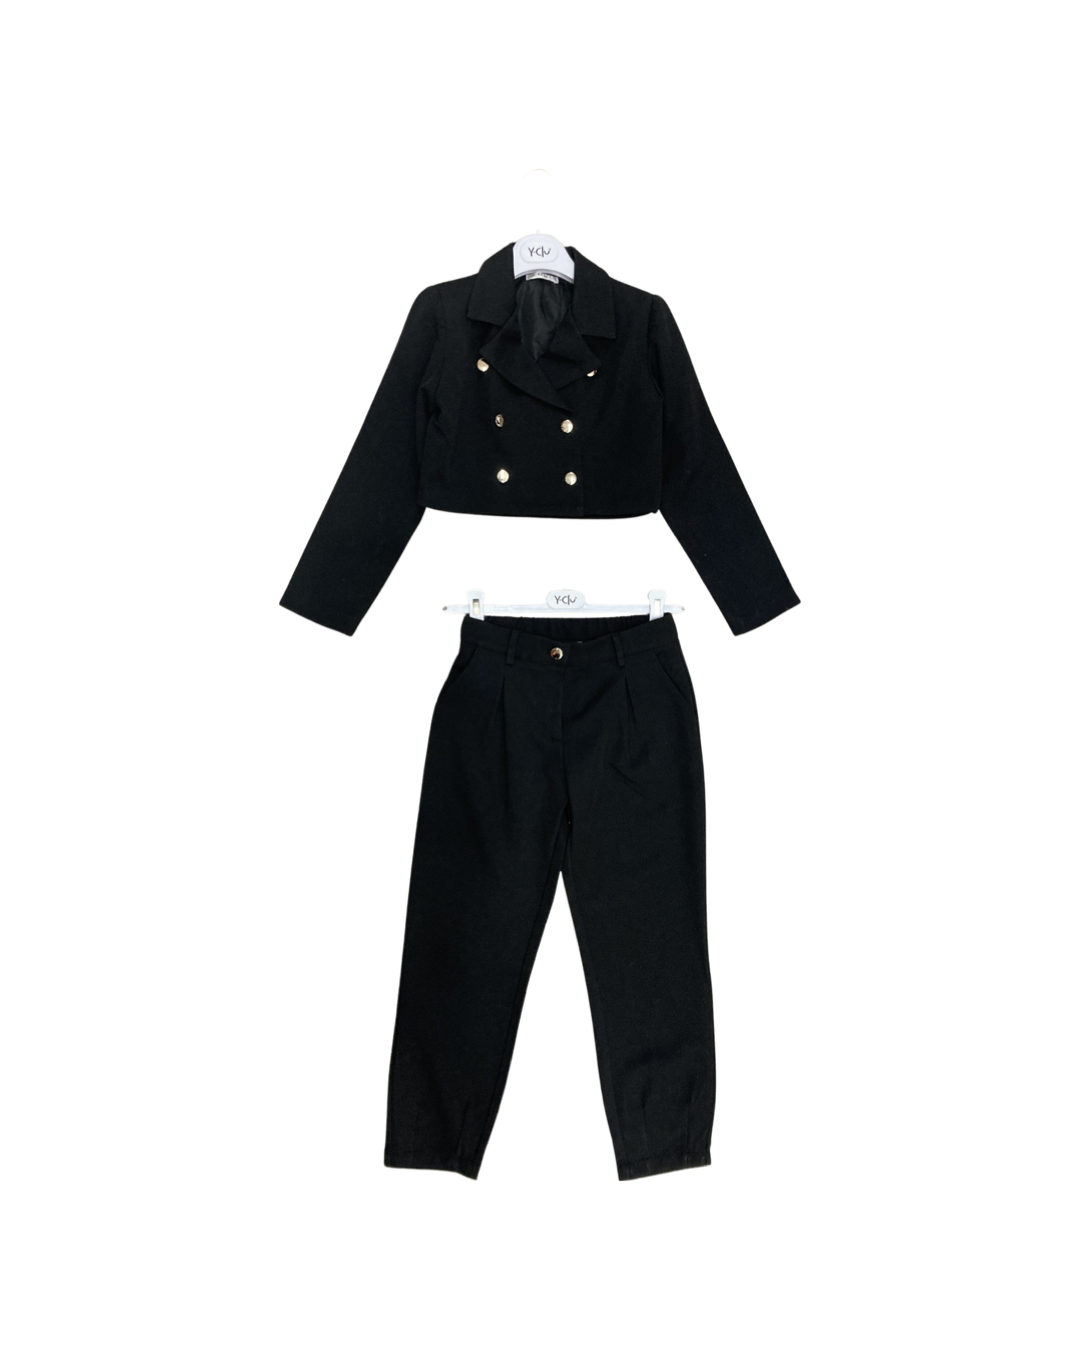 pantalone , Pantalone colore nero per bambina da 8anni a 16anni Y-Clù Y18093 - BabyBimbo 0-16, abbigliamento bambini